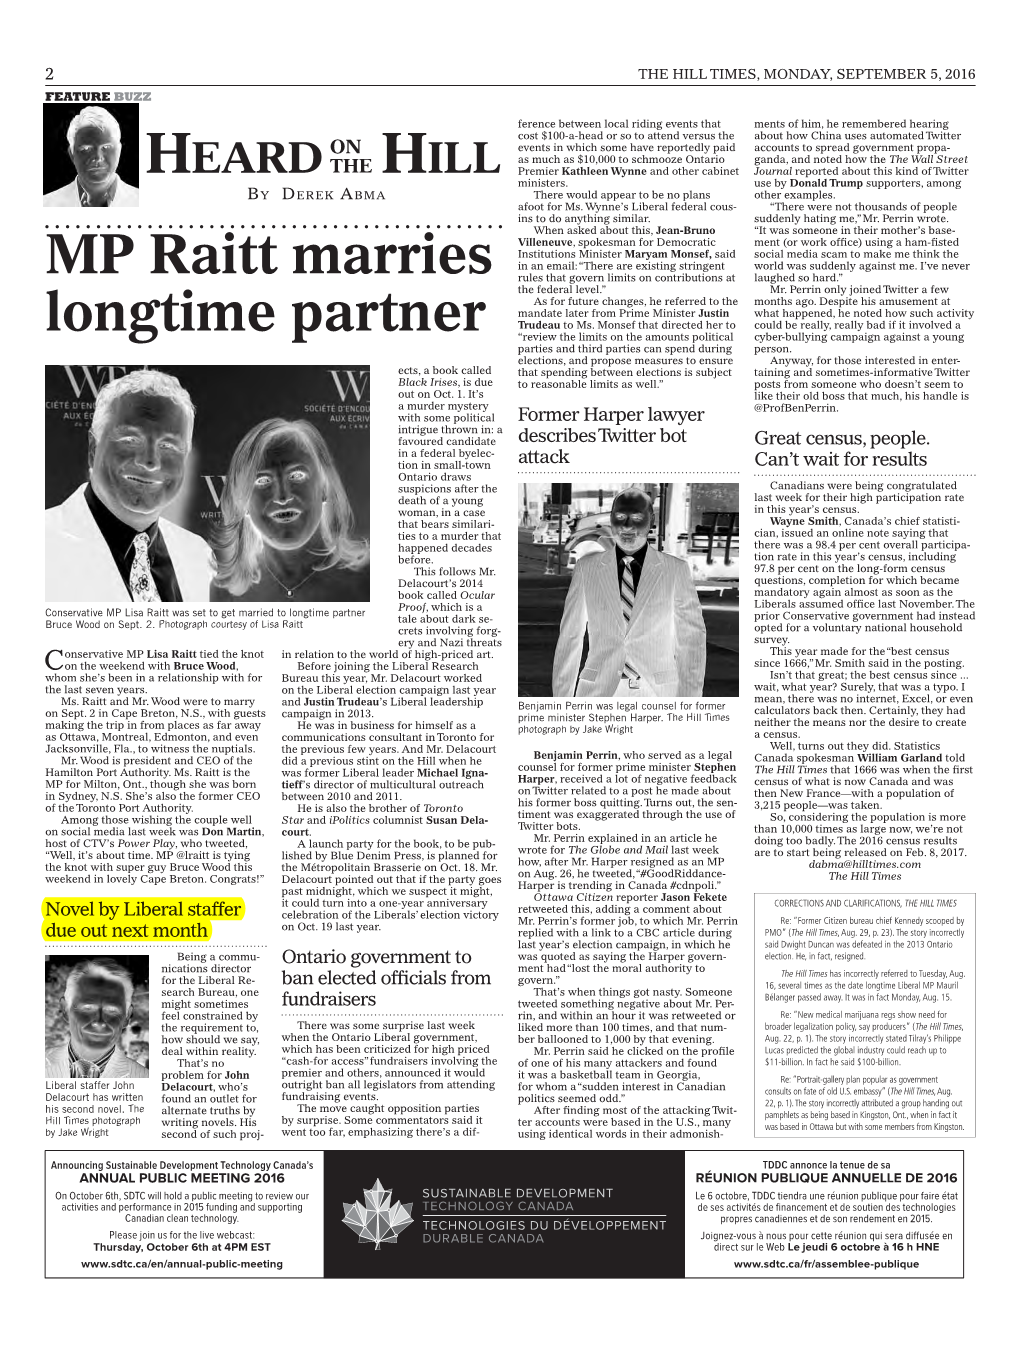 MP Raitt Marries Longtime Partner